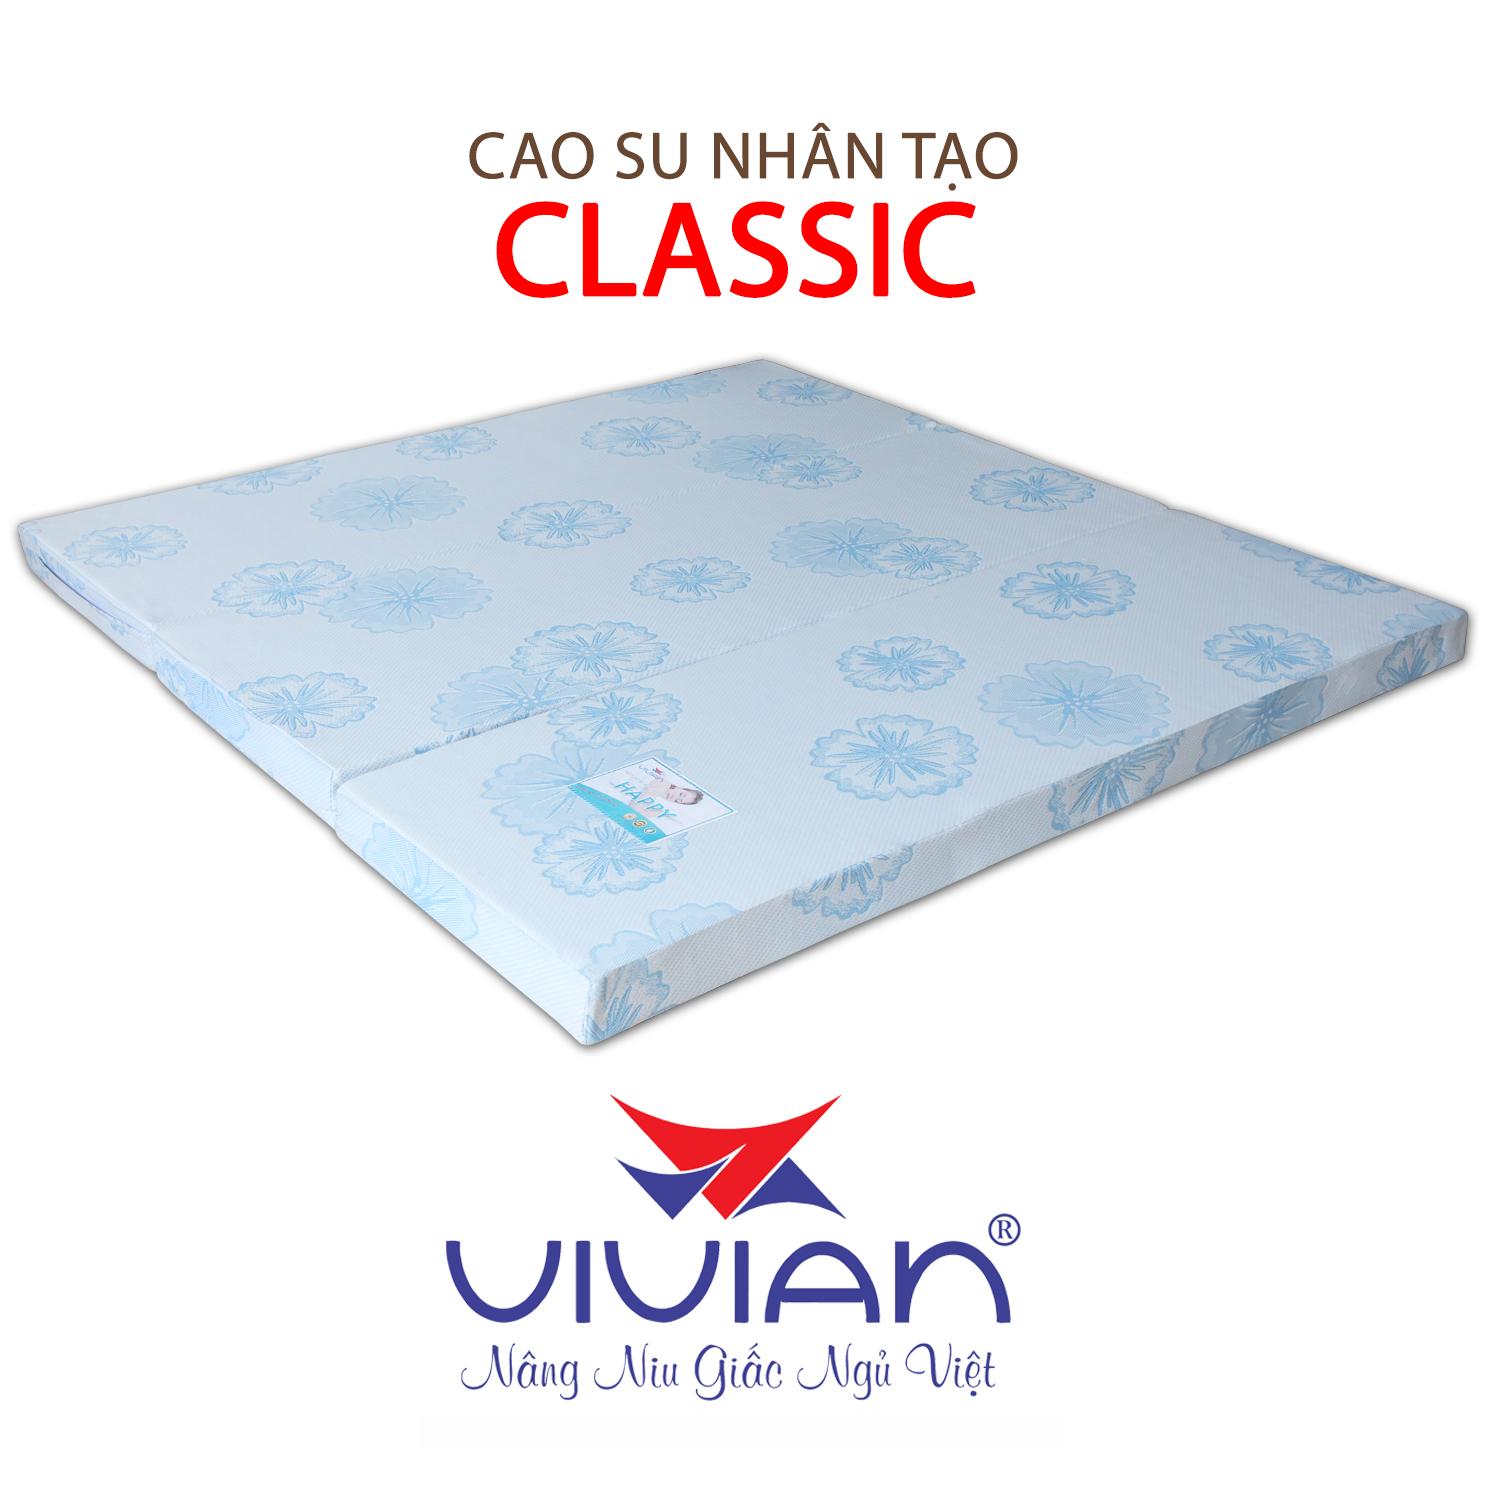 NỆM CAO SU NHÂN TẠO CLASSIC GẤP 3 VIVIAN 120X200X15